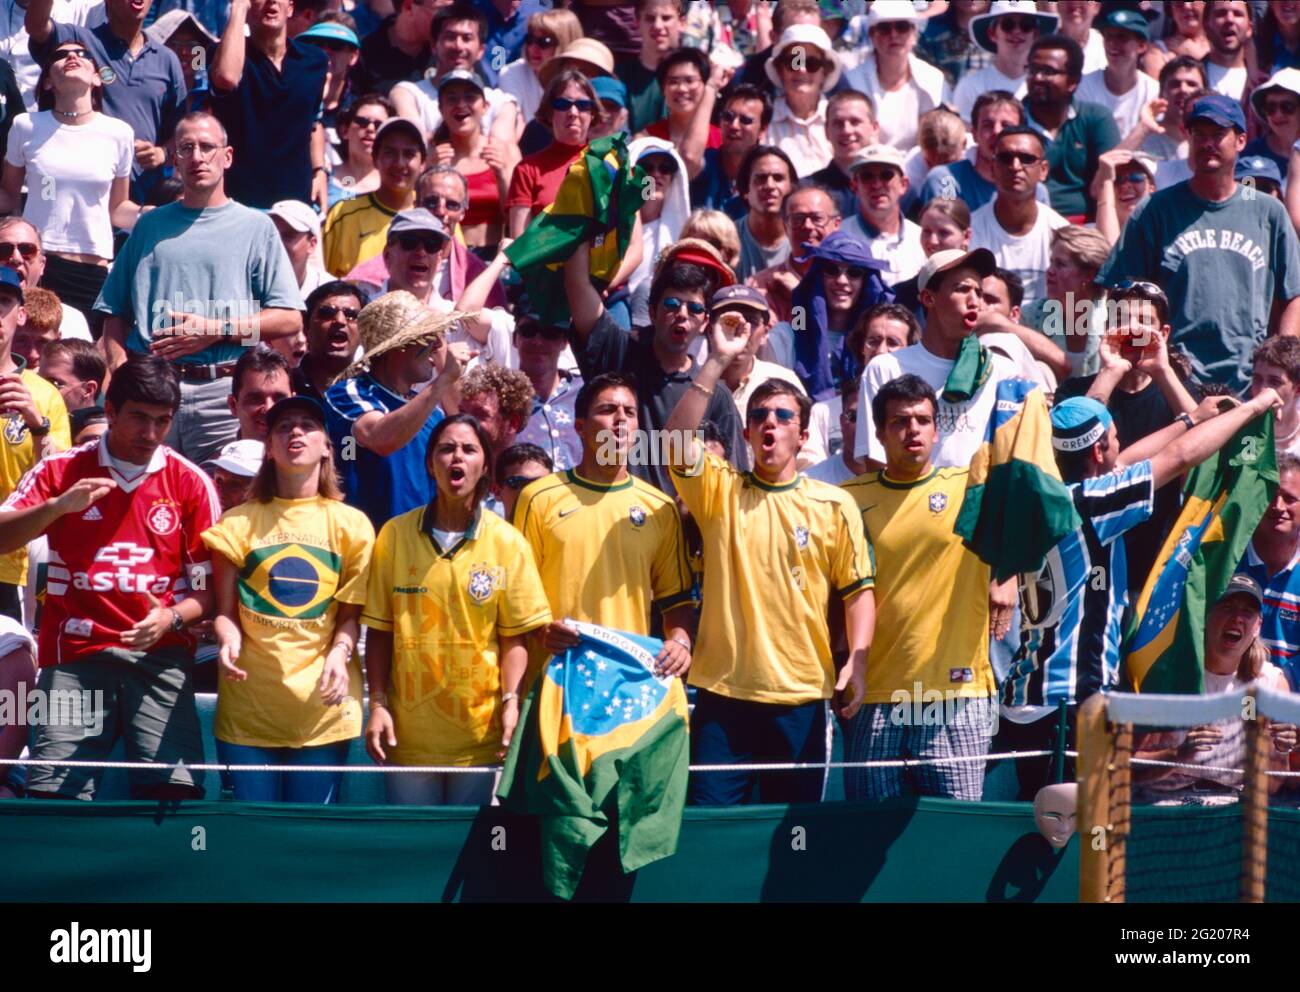 Seguidores brasileños del equipo de tenis viendo el partido, 2000s Foto de stock